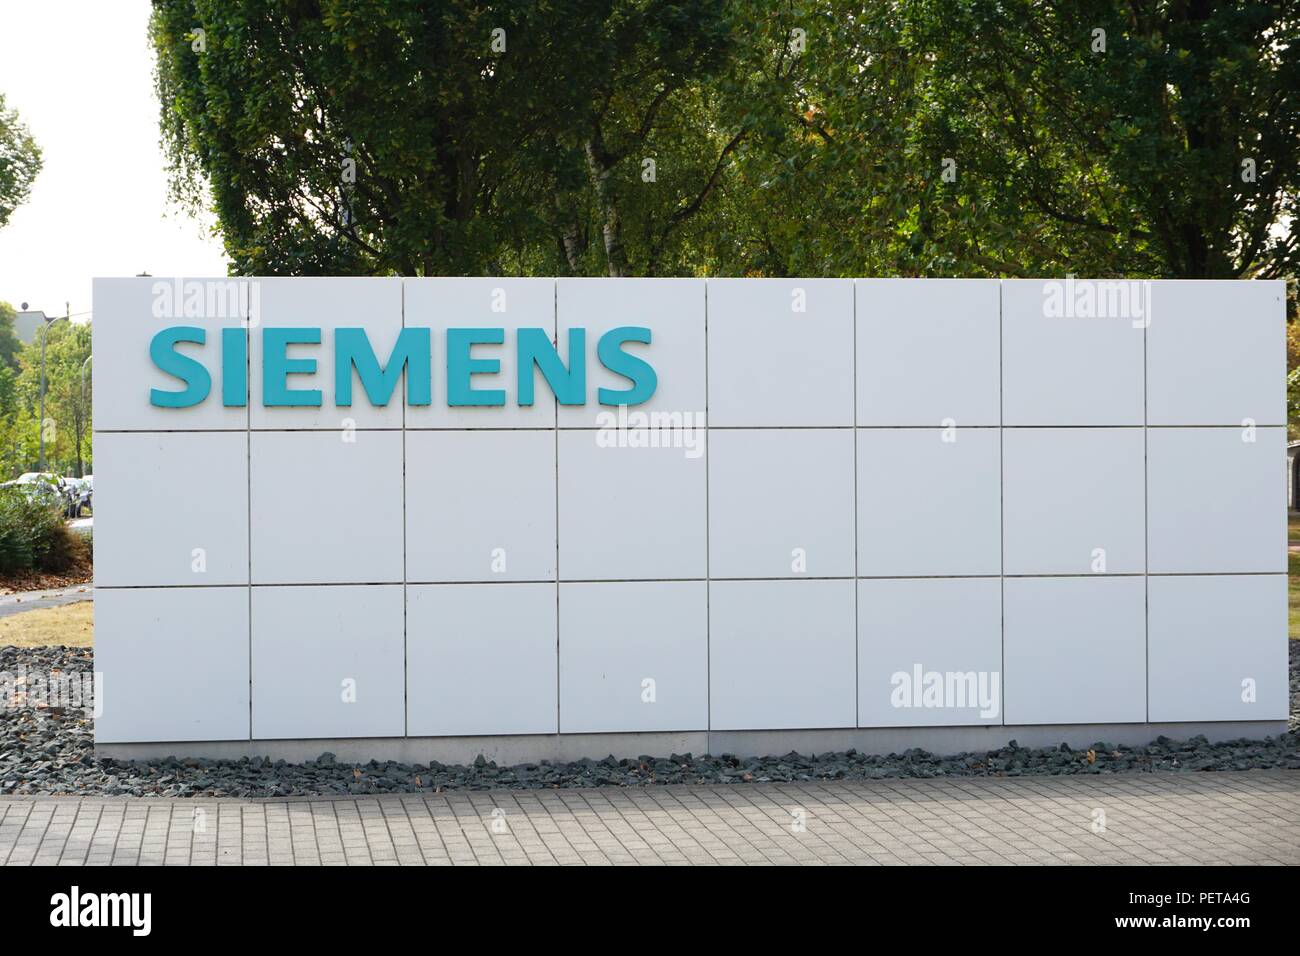 siemens train company germany Stock Photo